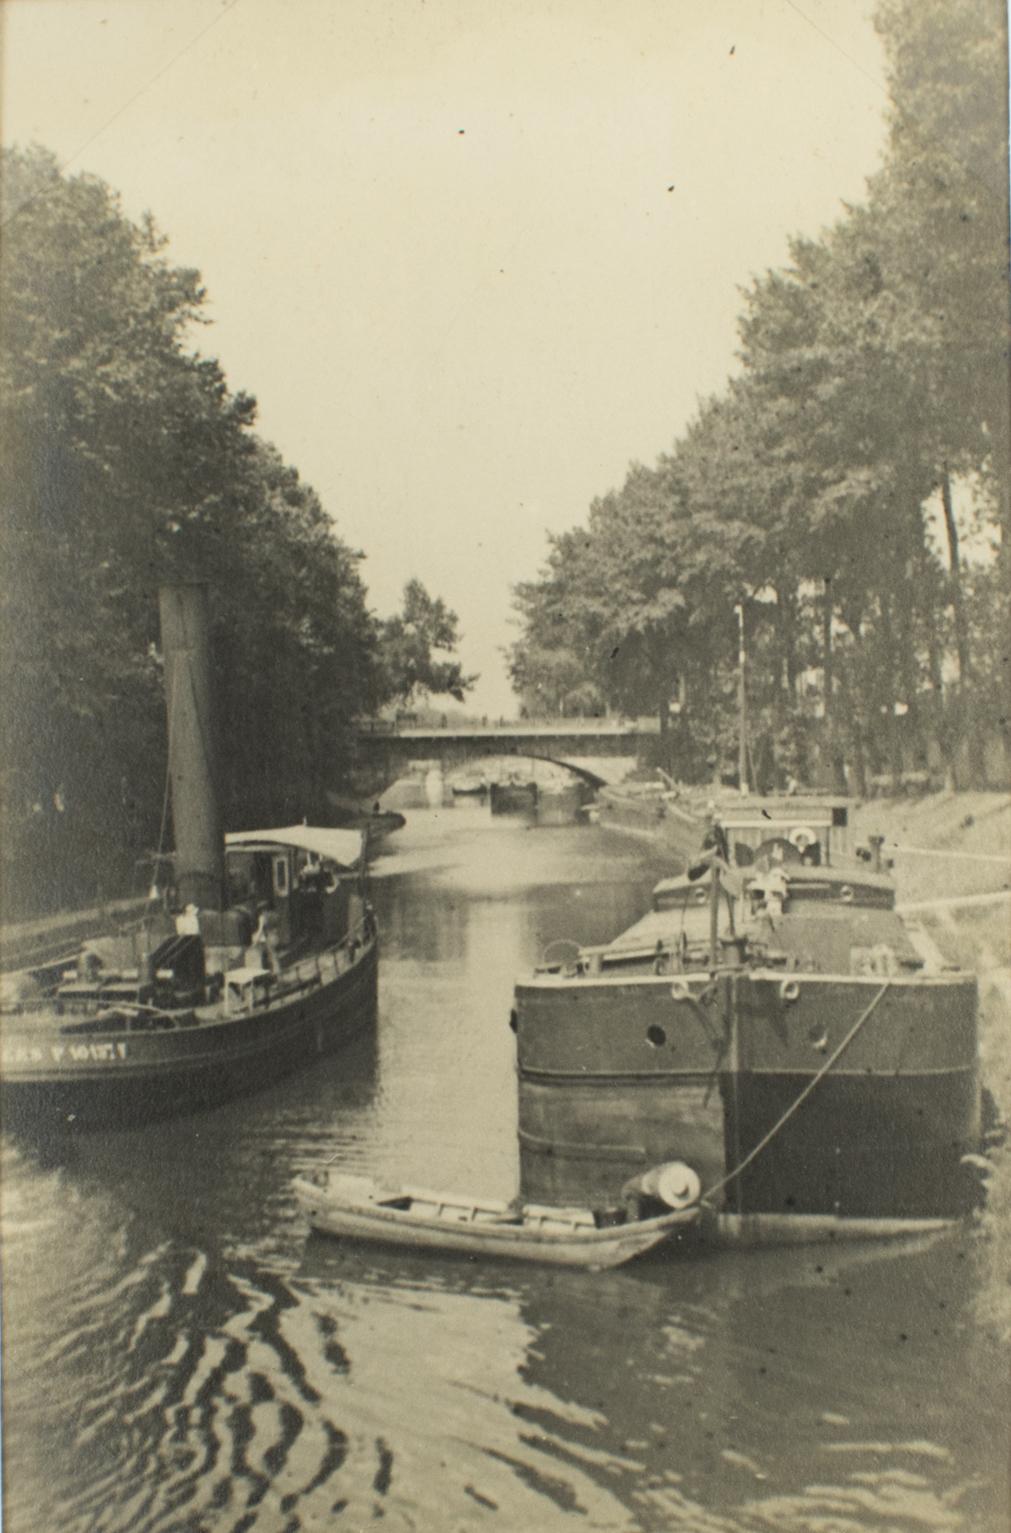 Barge Boats près de Paris, France 1926, photographie en gélatine argentique noire et blanche